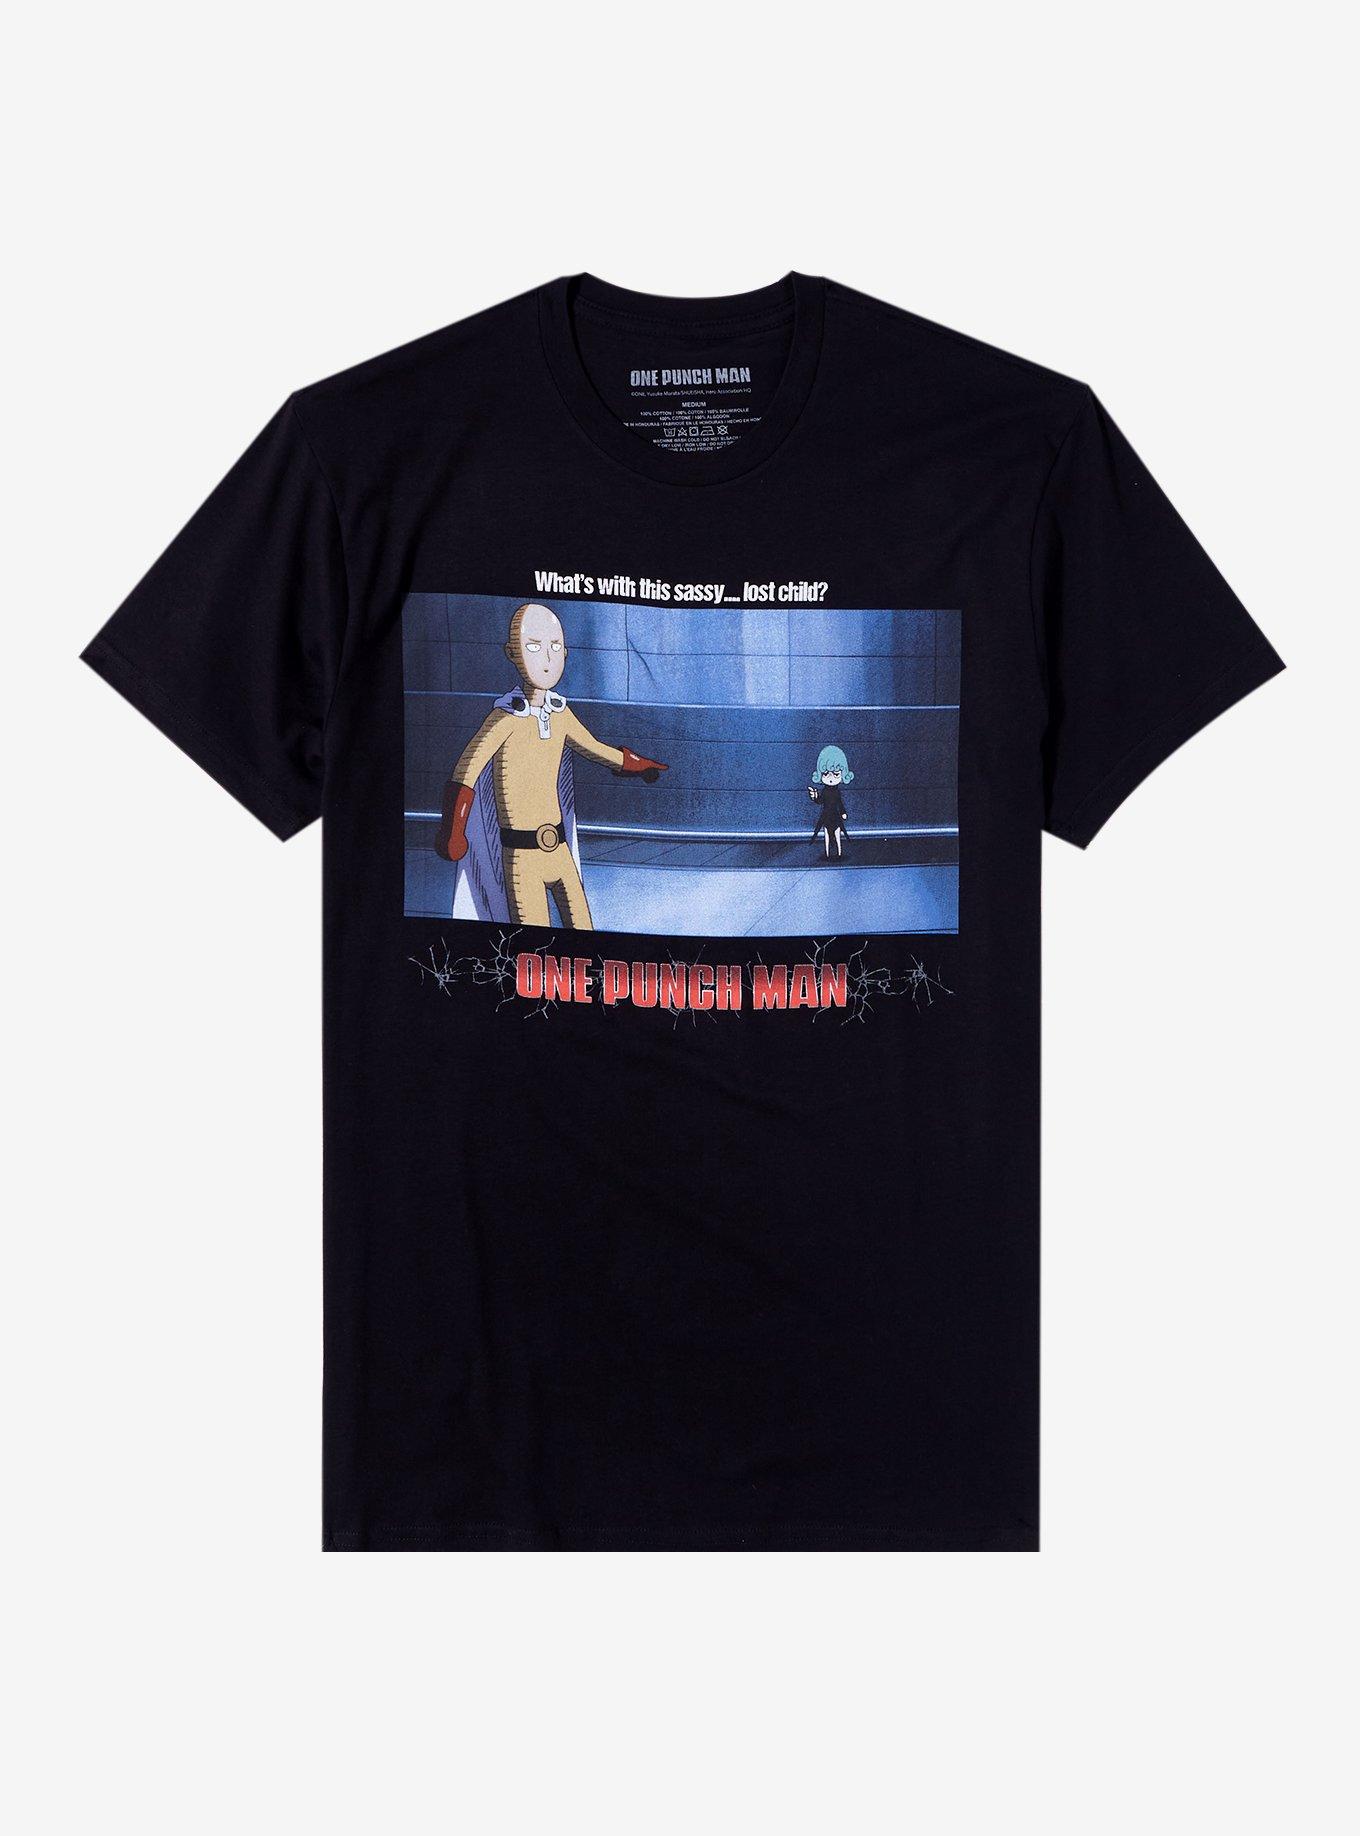 One Punch Man Tatsumaki Lost Child T-Shirt